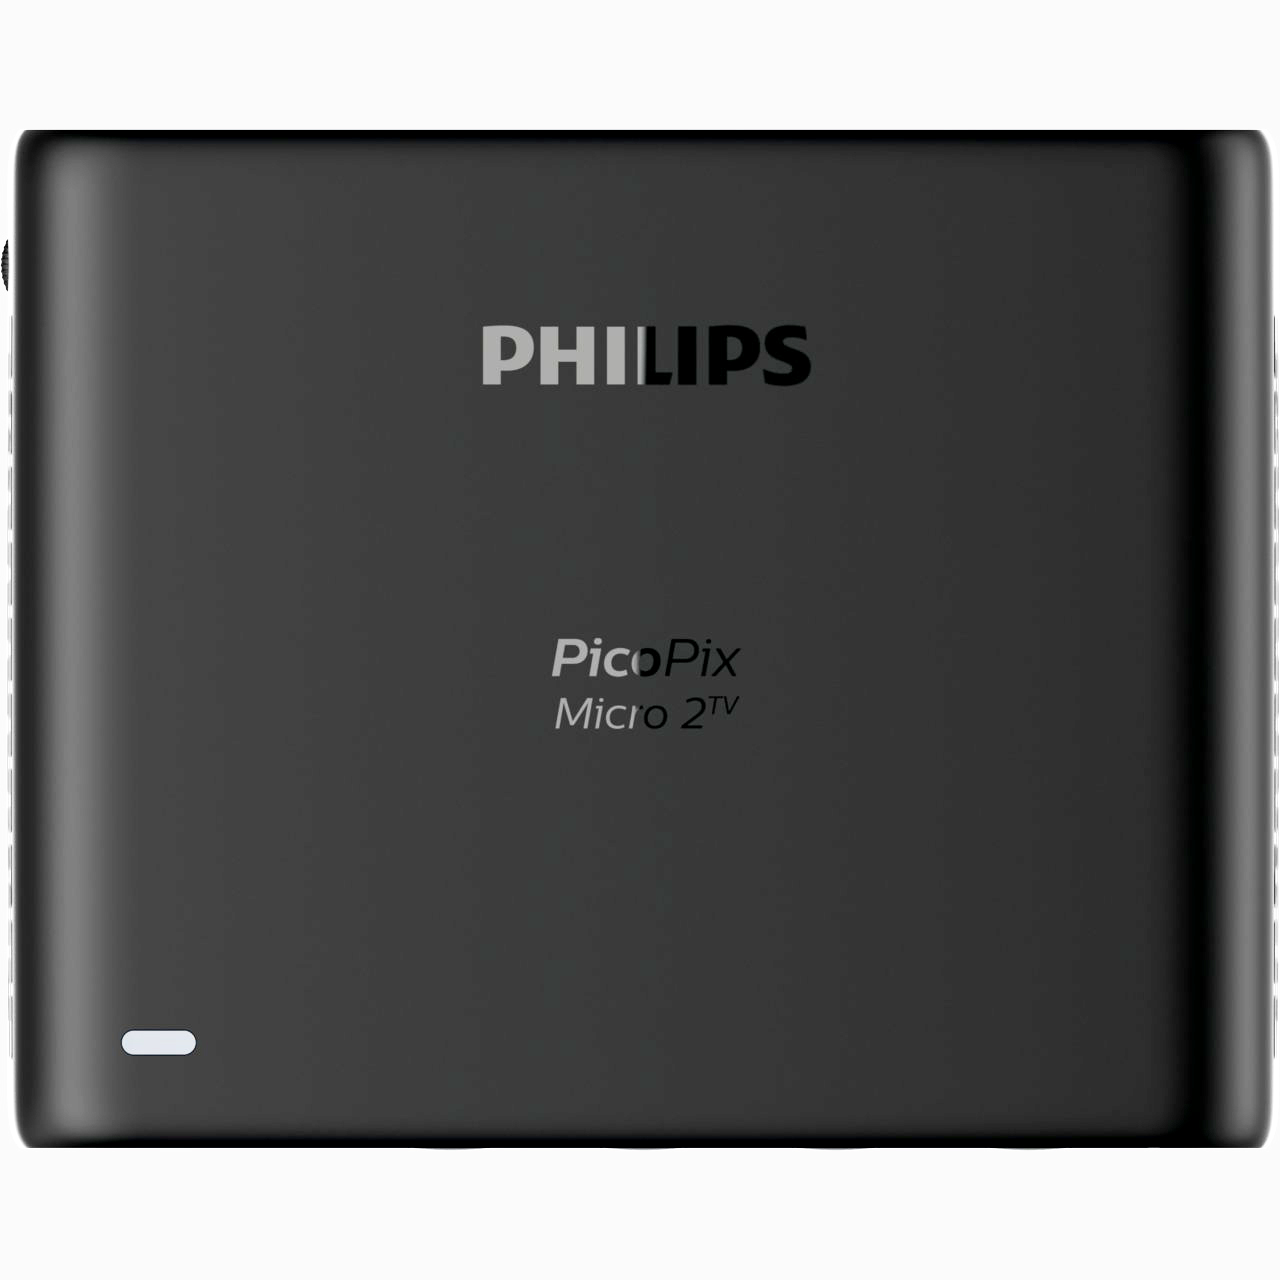 Philips PicoPix Micro 2 TV